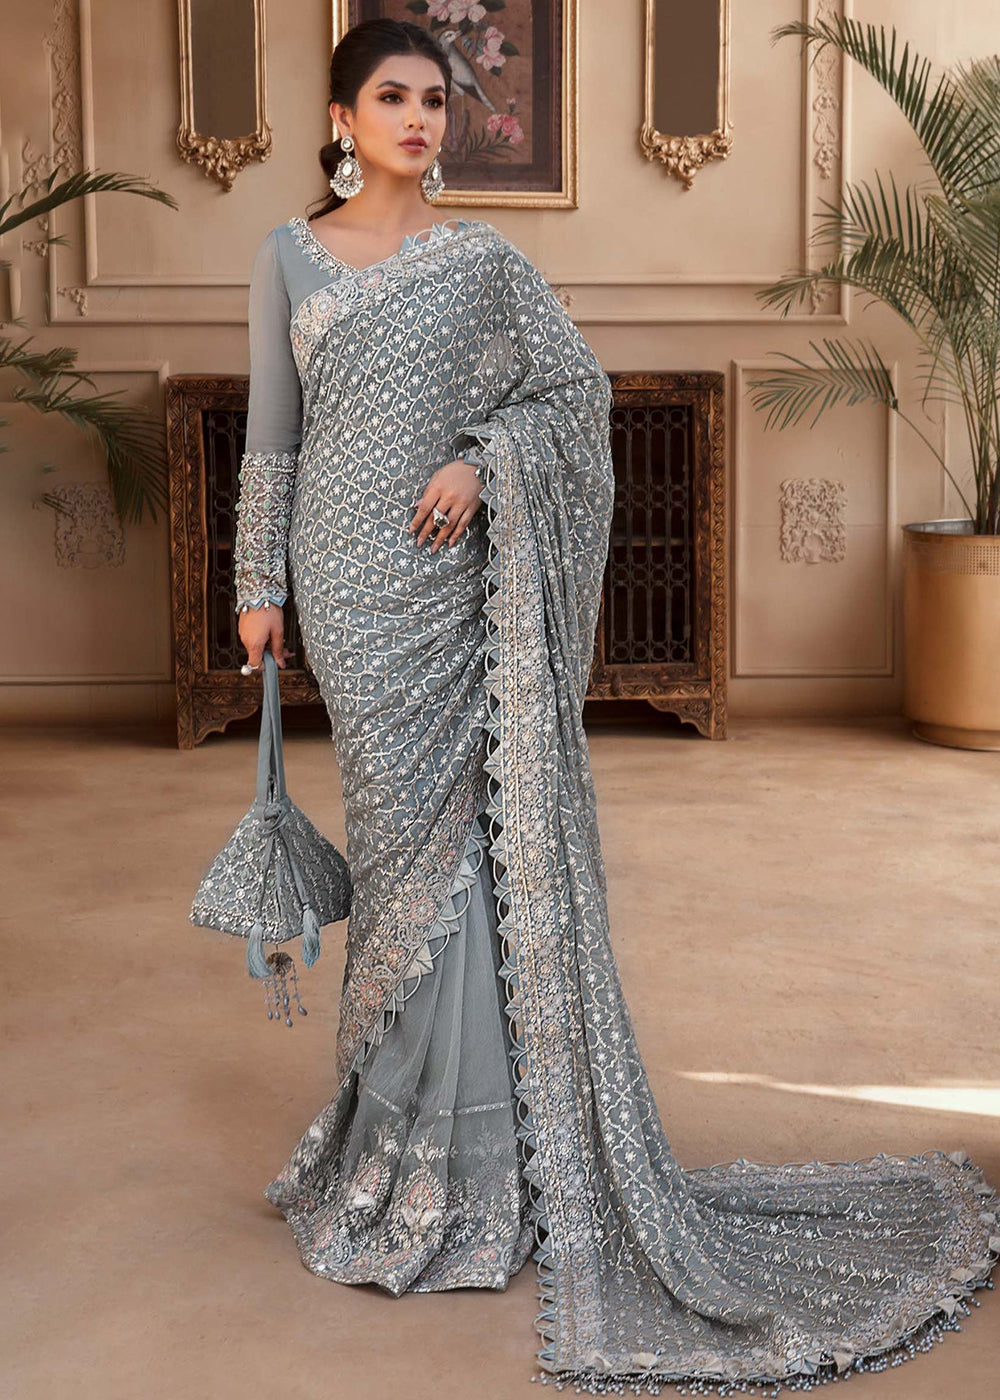 Buy Pakistani Designer & Wedding Wear Sarees Online in USA, UK Canada, Germany, Australia, New Zealand, Italy, France, Dubai & Worldwide at Empress Clothing. 